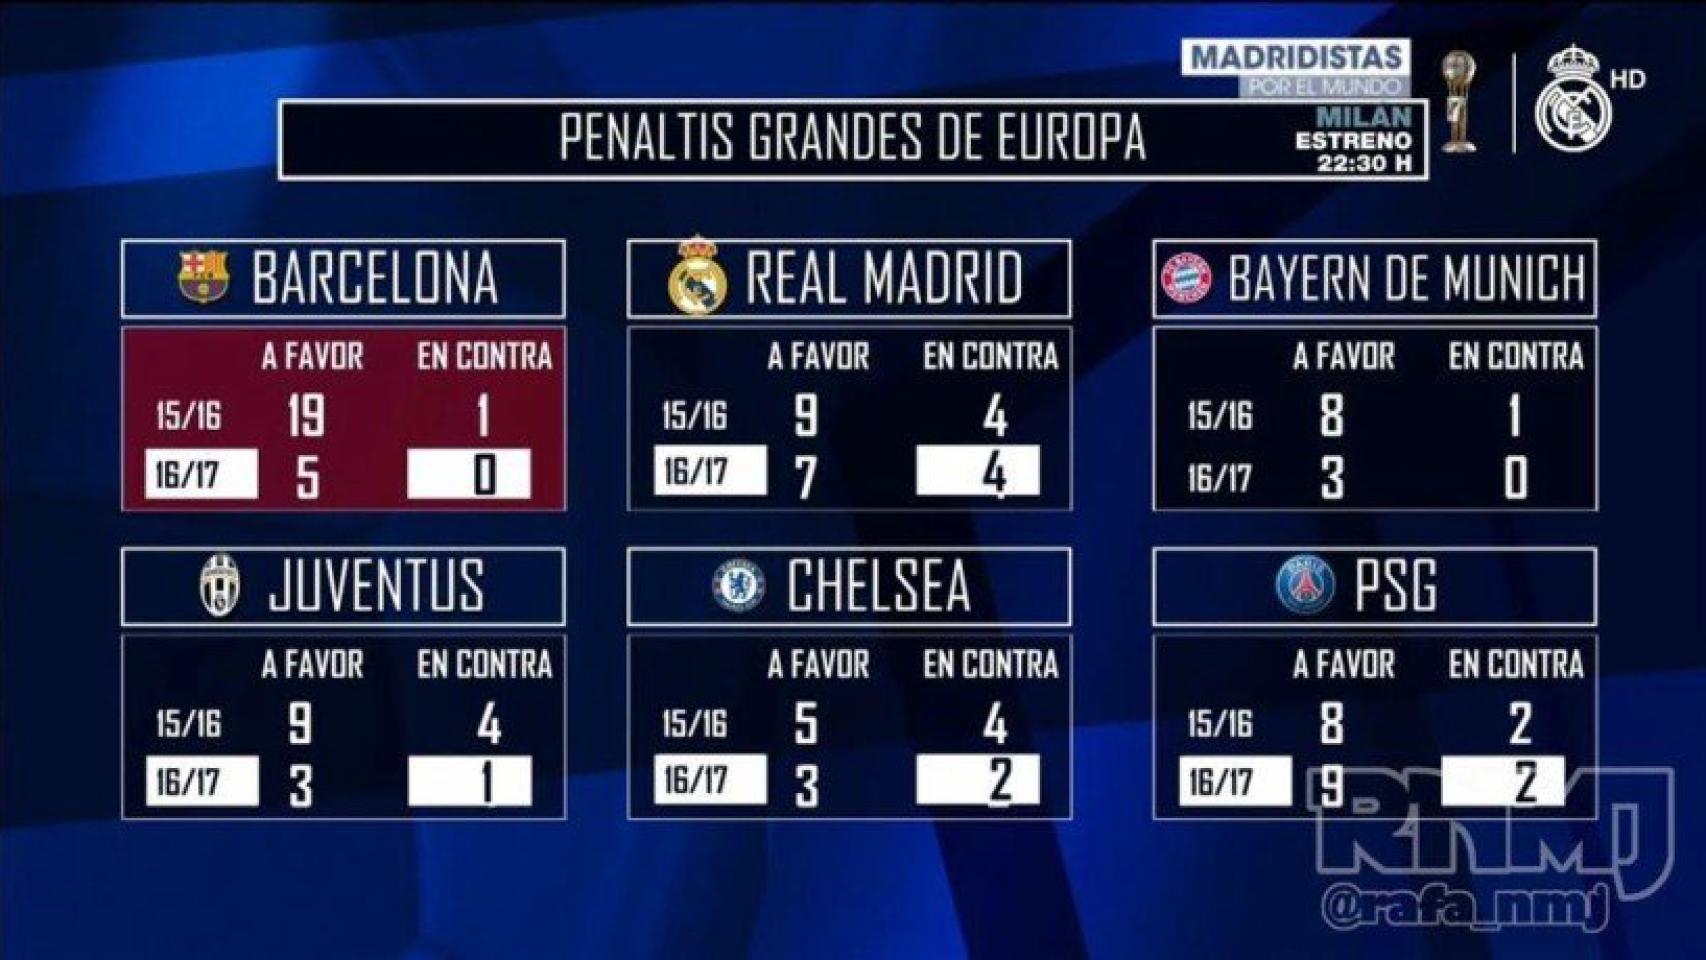 Penaltis en contra de los grandes de Europa esta temporada